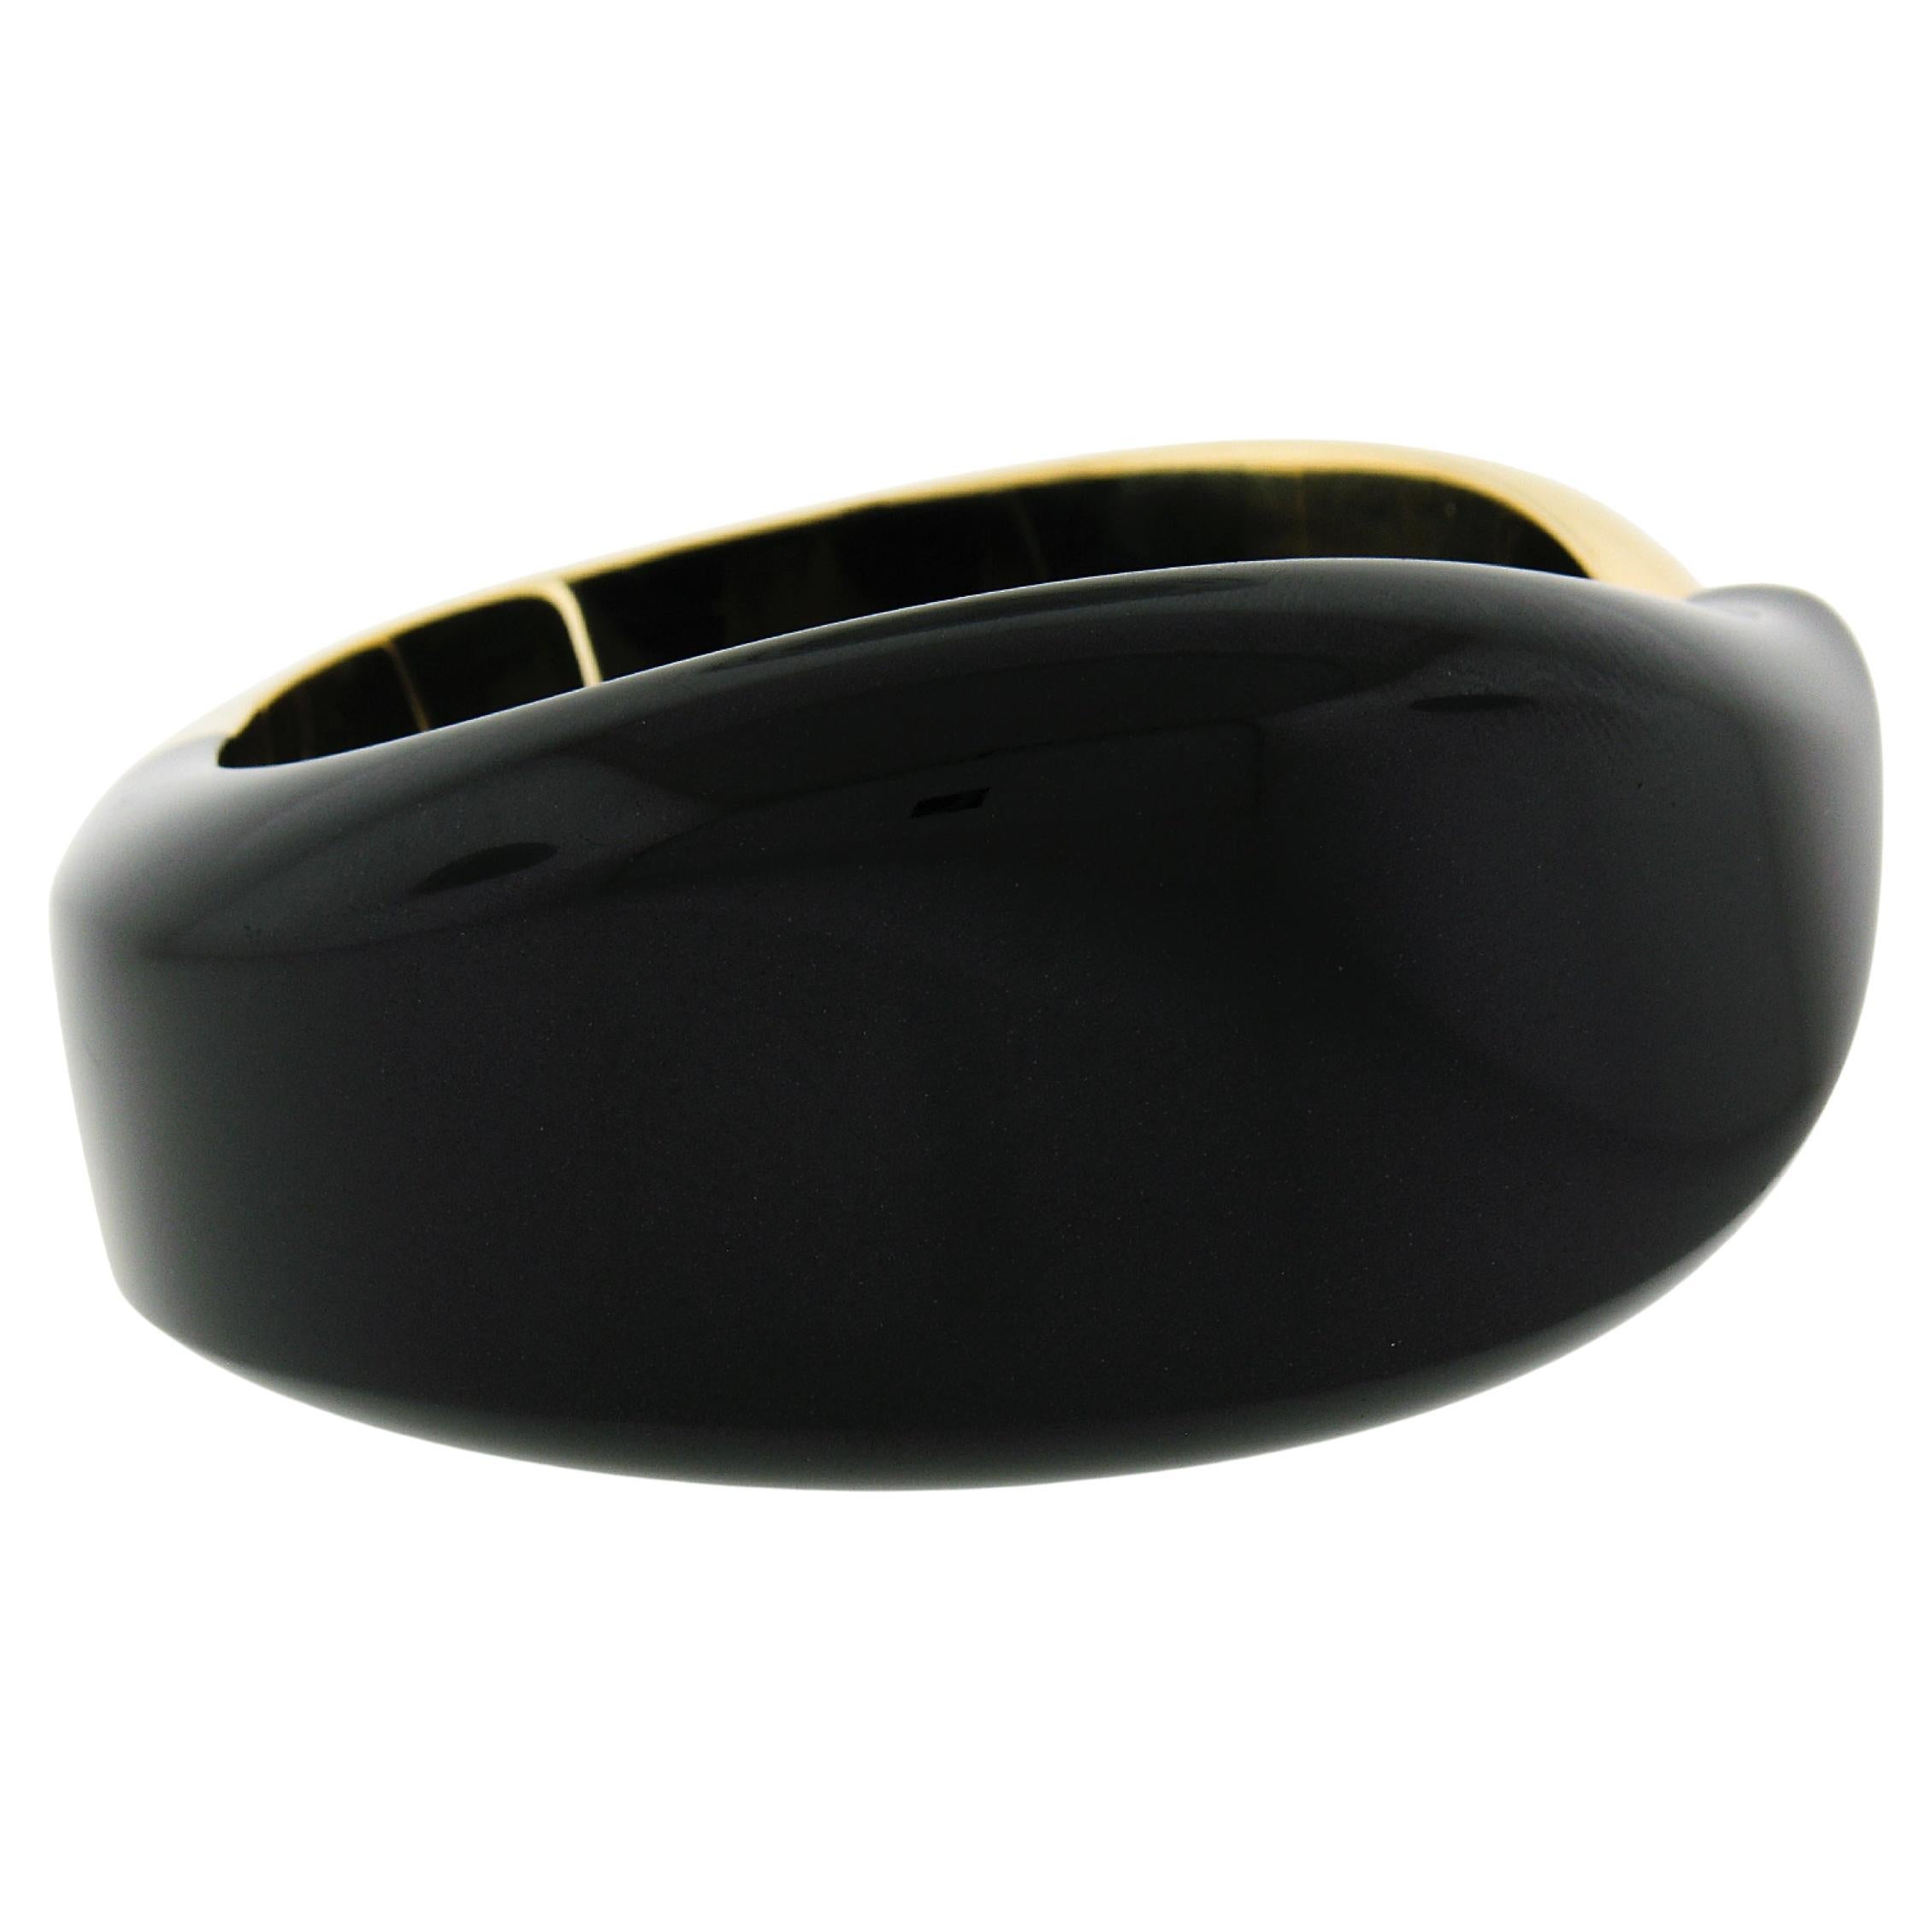 MATERIAL : Or jaune 18k et Jade noir
Poids : 107,14 grammes
Type de bracelet : Bracelet manchette à charnière
Longueur : S'adapte à un poignet de 6.7 pouces.
Largeur : 30 mm (1.19 in) 
Épaisseur : 8.1 mm au niveau du poignet
Signature(s) : Tiffany &